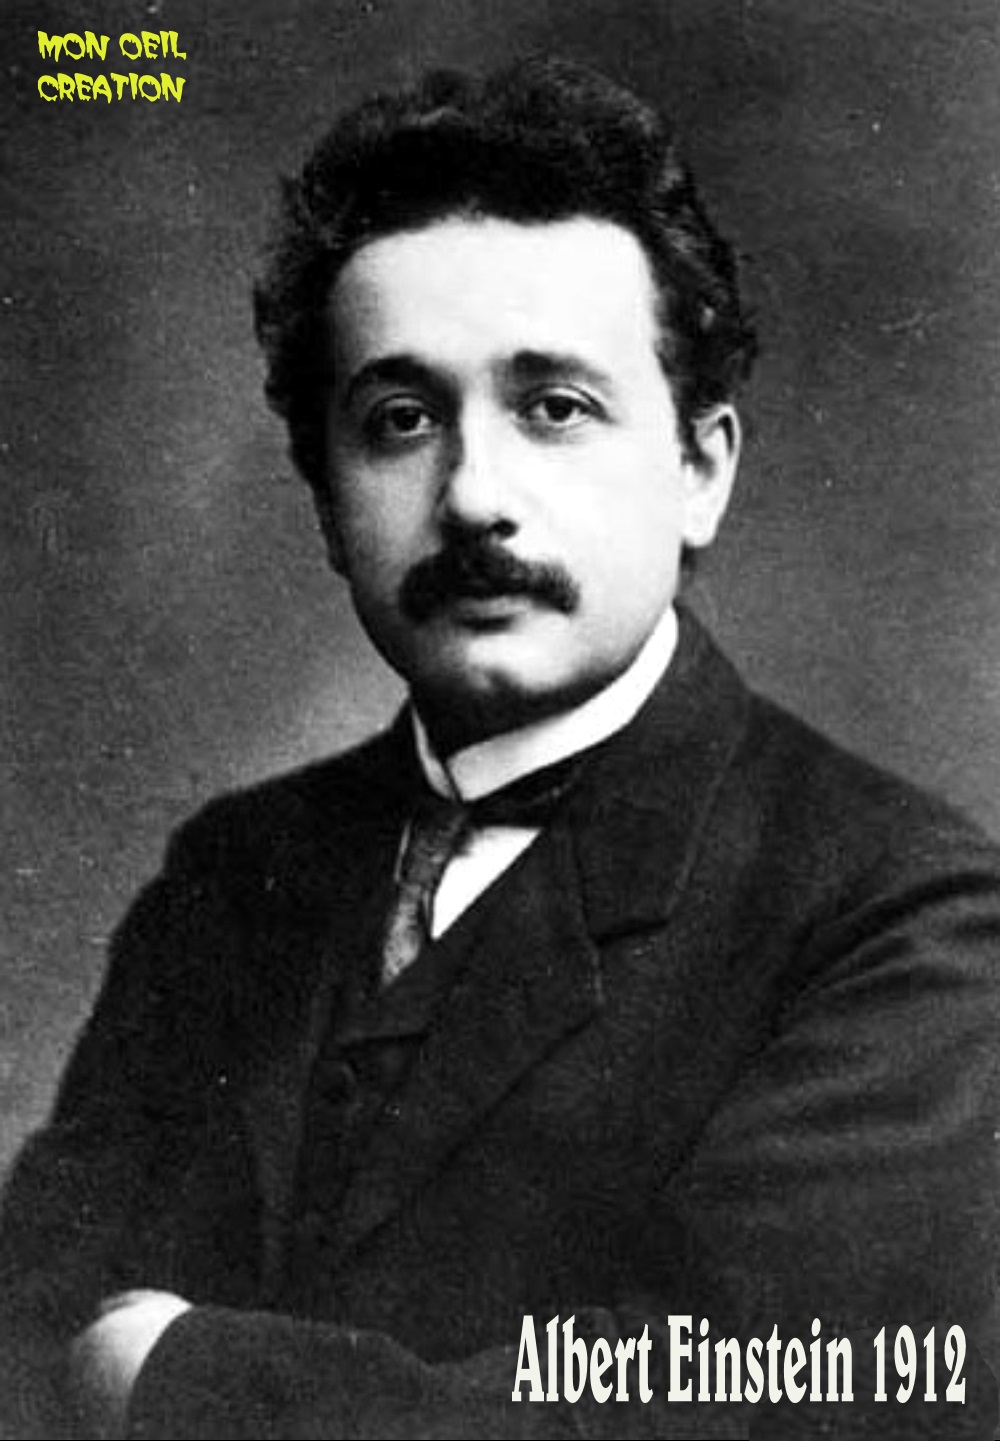 AV27. Portrait - Einstein 1912